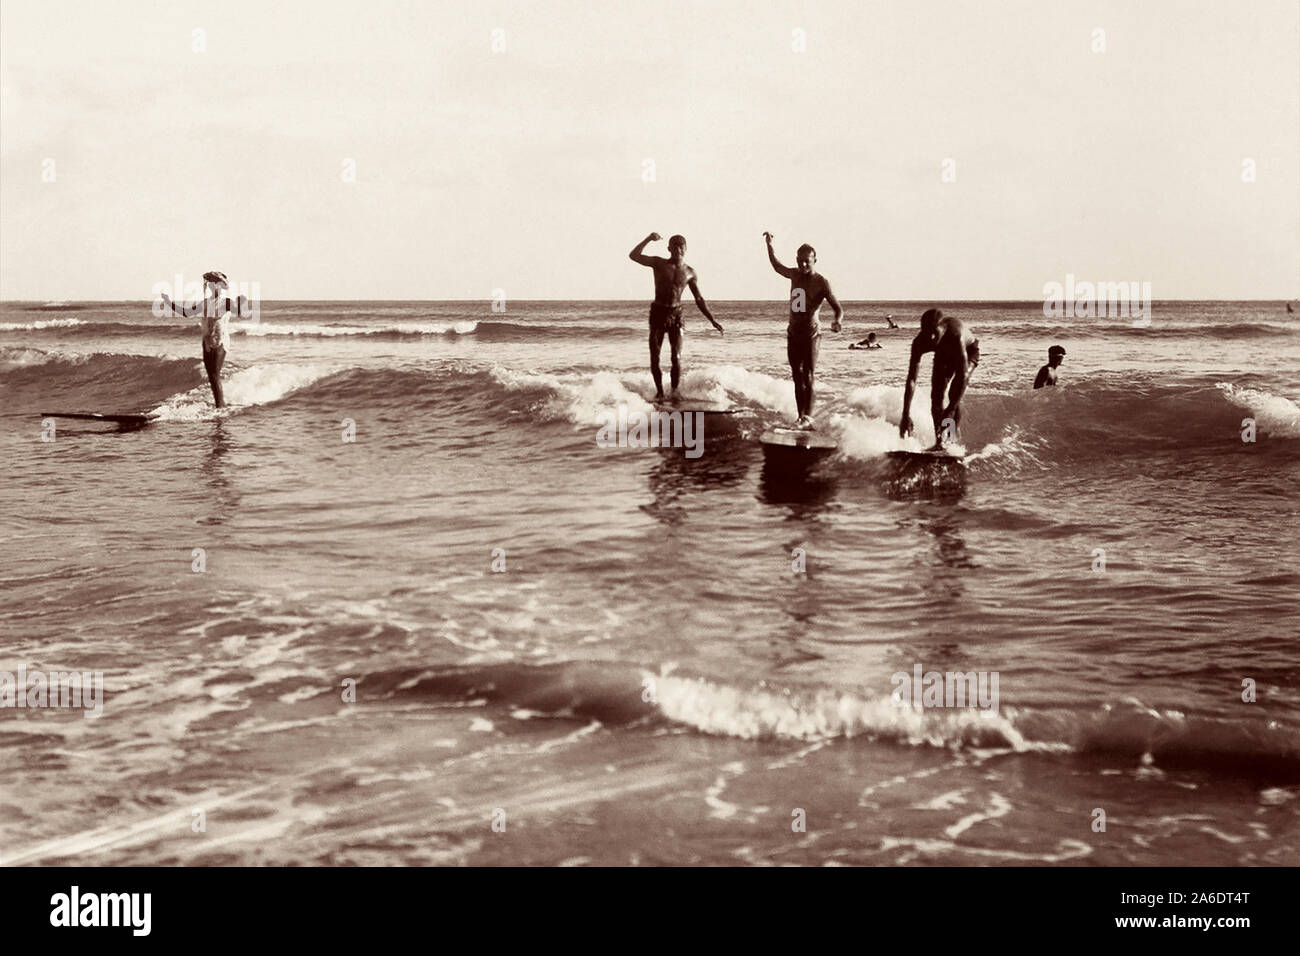 Vintage surfen Foto vom Waikiki Beach in Honolulu, Hawaii der Surfer auf Holz surfboards Teilen eine Welle. Stockfoto